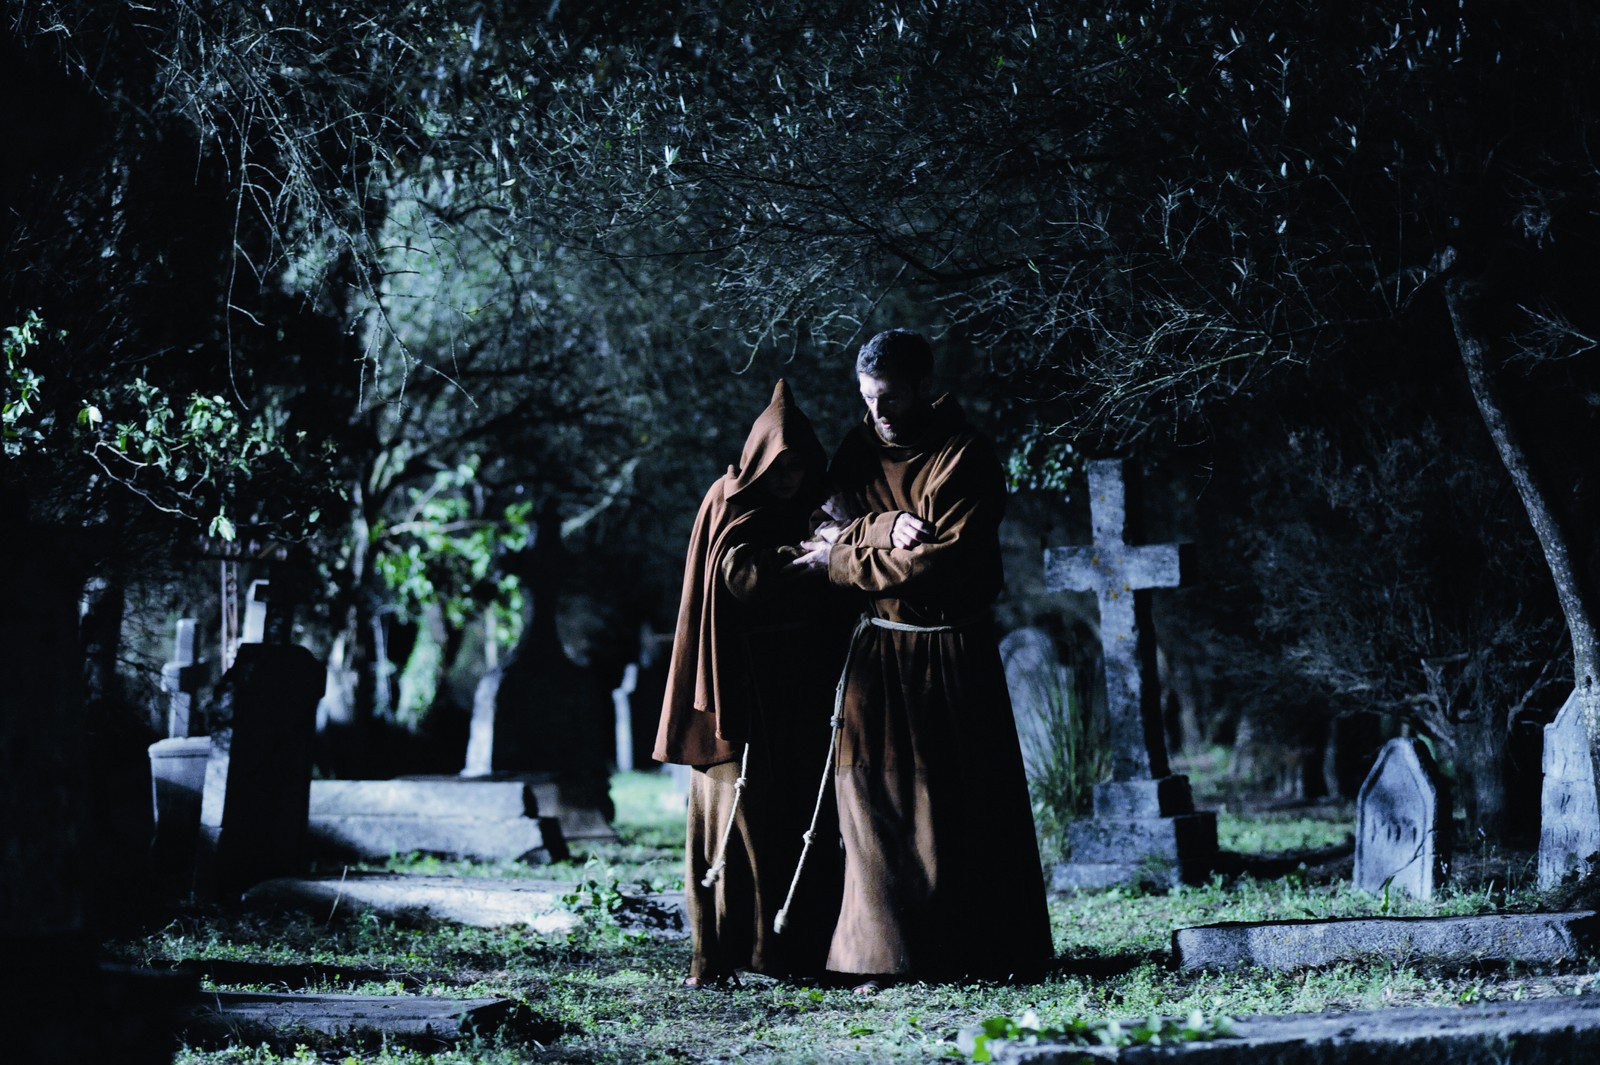 //www.occitanie-films.netDeux moines marchant de nuit dans un cimetière